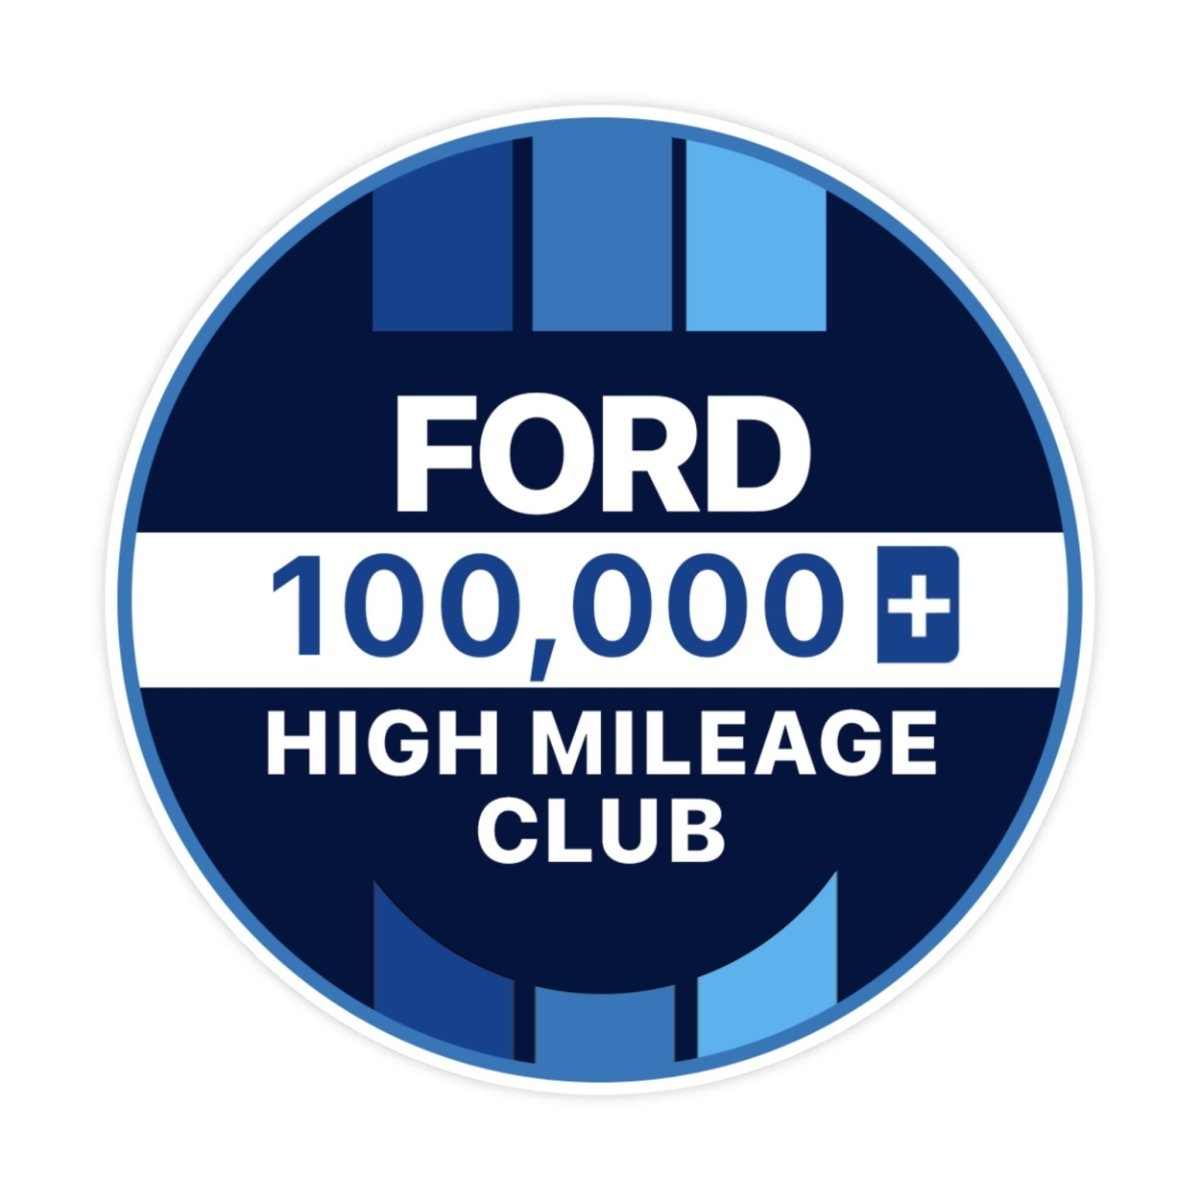 Ford 200k High Mileage Club Sticker - stickerbullFord 200k High Mileage Club StickerRetail StickerstickerbullstickerbullTaylor_Ford100k [#118]100kFord 200k High Mileage Club Sticker